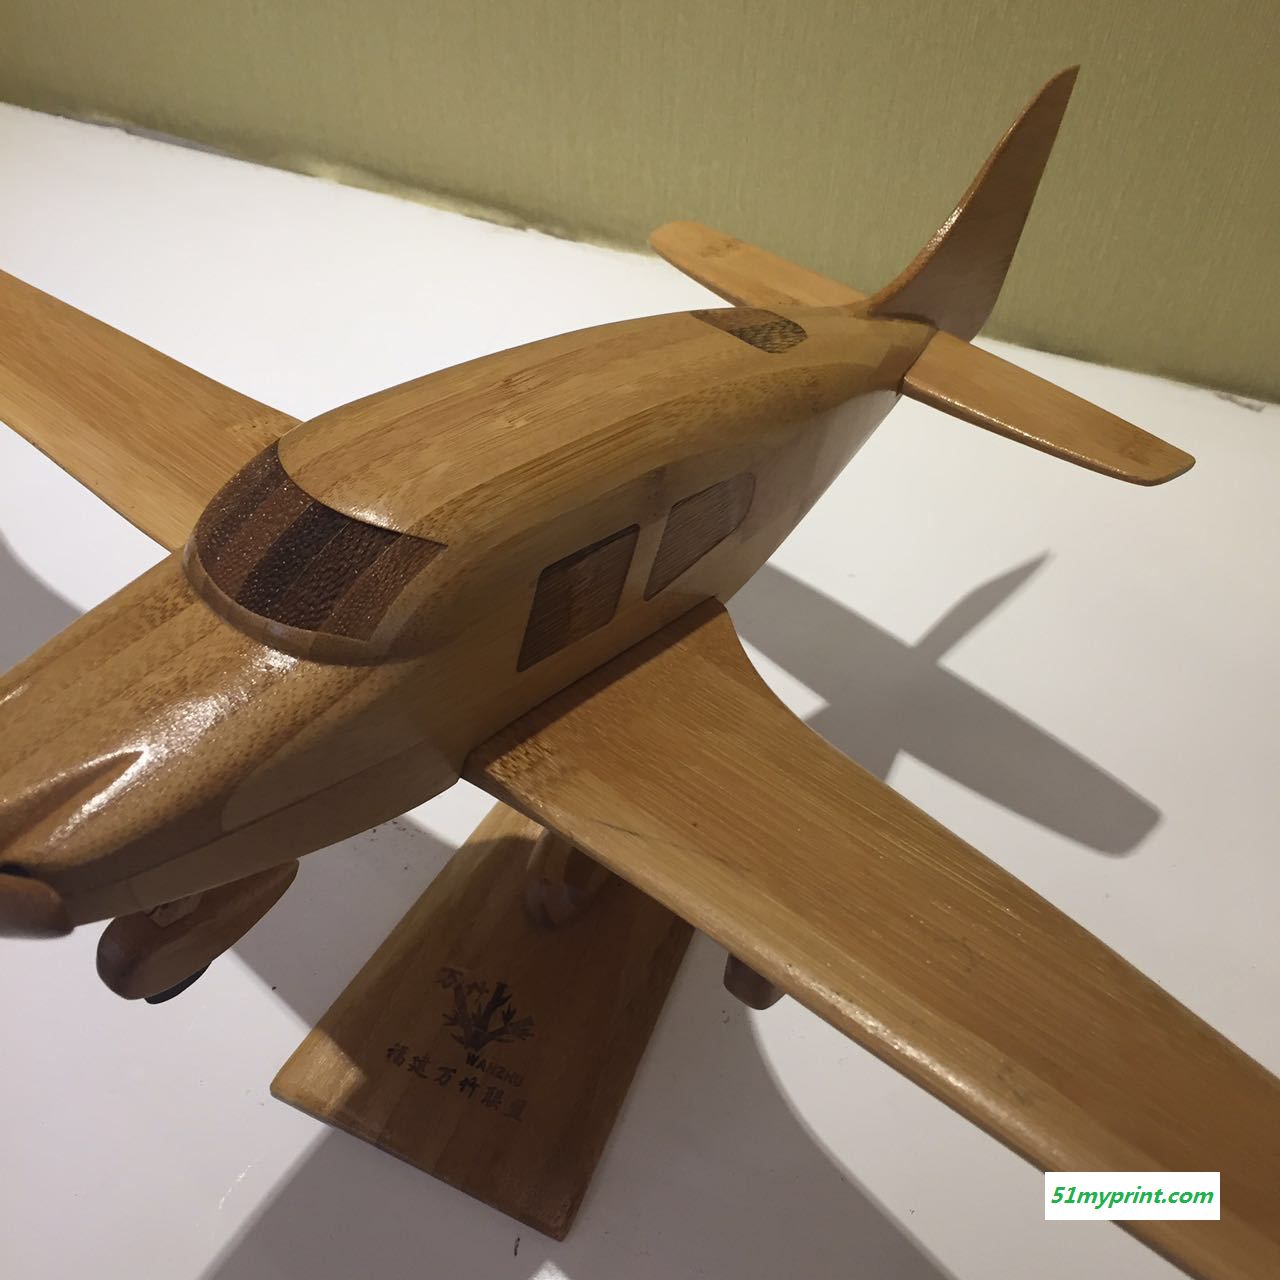 厂家直销竹制飞机模型 竹木航空仿真飞机模型 航模礼品 工艺品